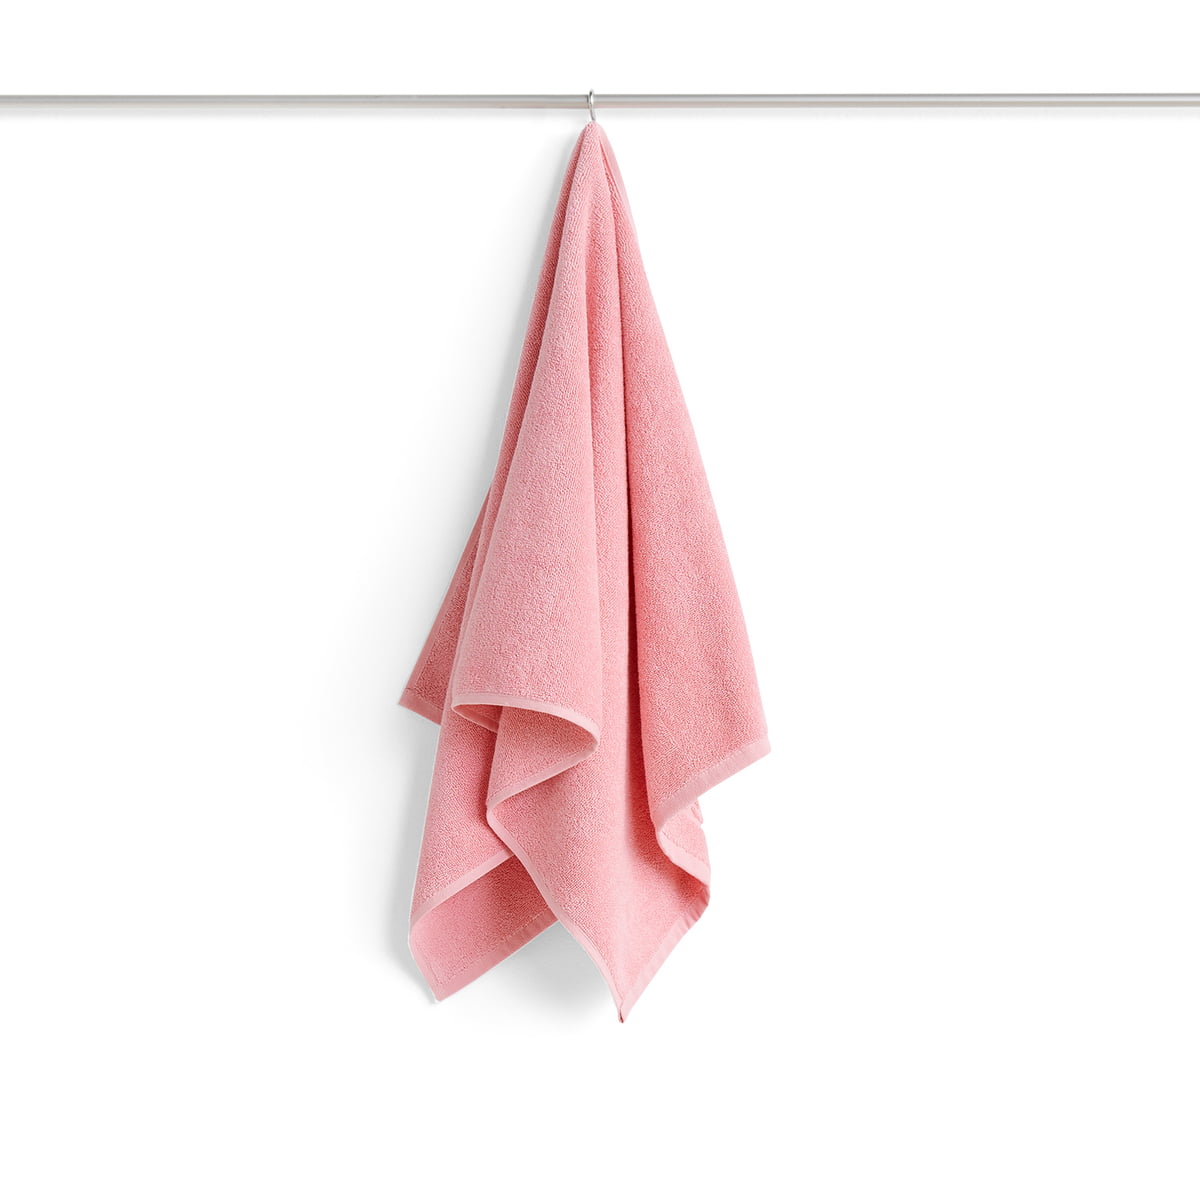 hay - mono serviette de bain, 50 x 100 cm, rose